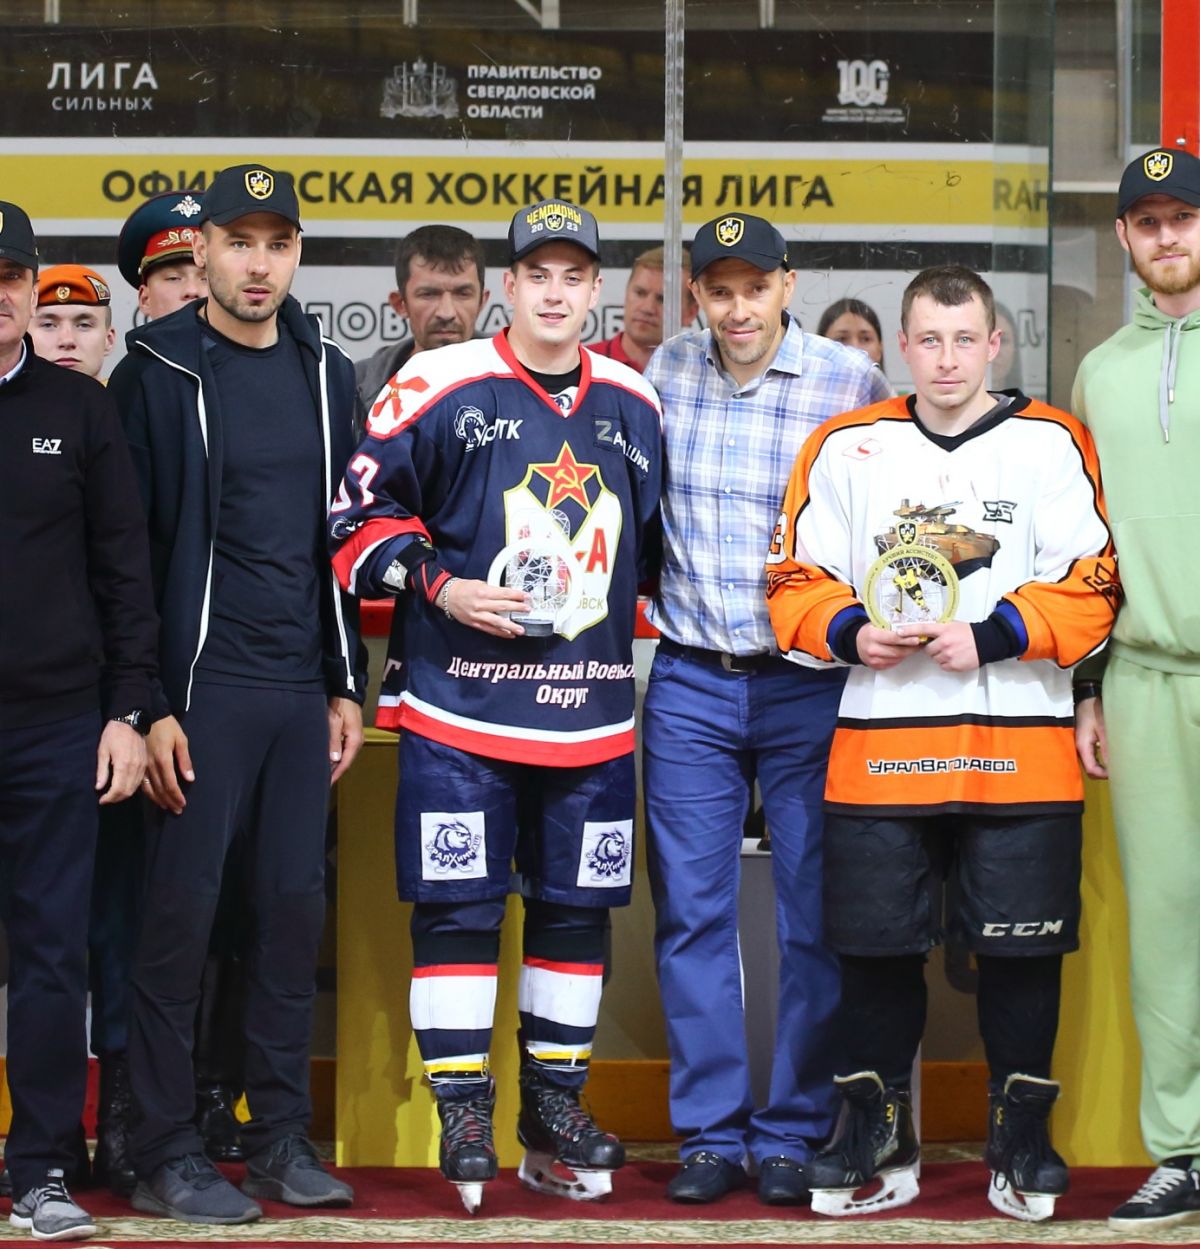 Определены лучшие игроки Офицерской Хоккейной Лиги в Екатеринбурге!